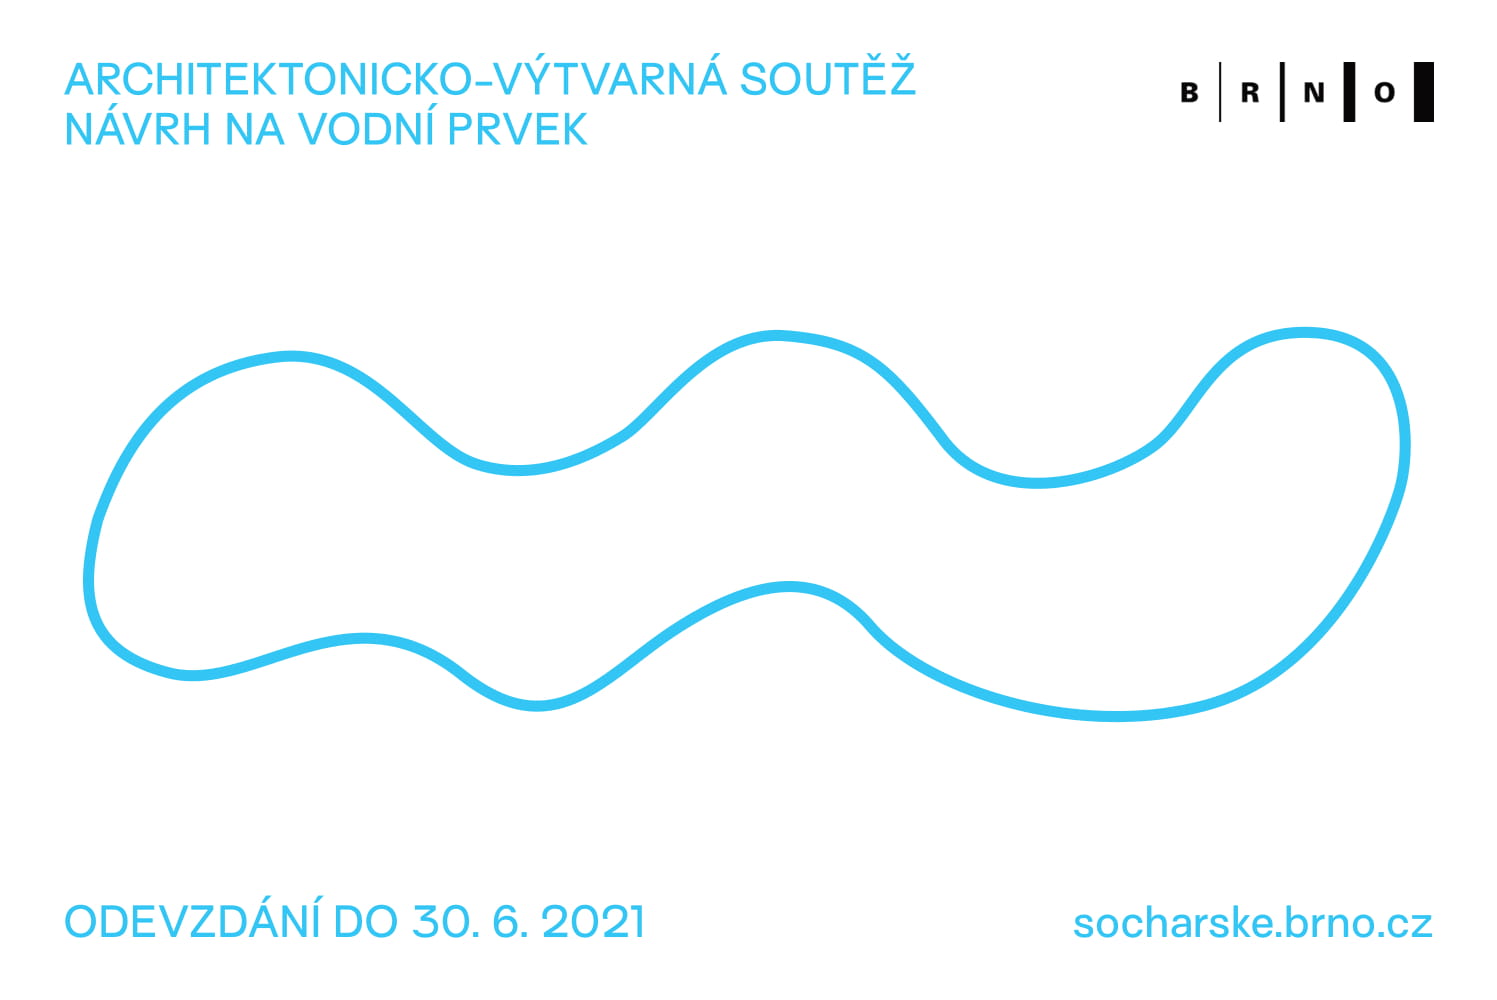 Oznamujeme zahájení architektonicko-výtvarné soutěže o návrh na vodní prvek na Dominikánském náměstí v Brně